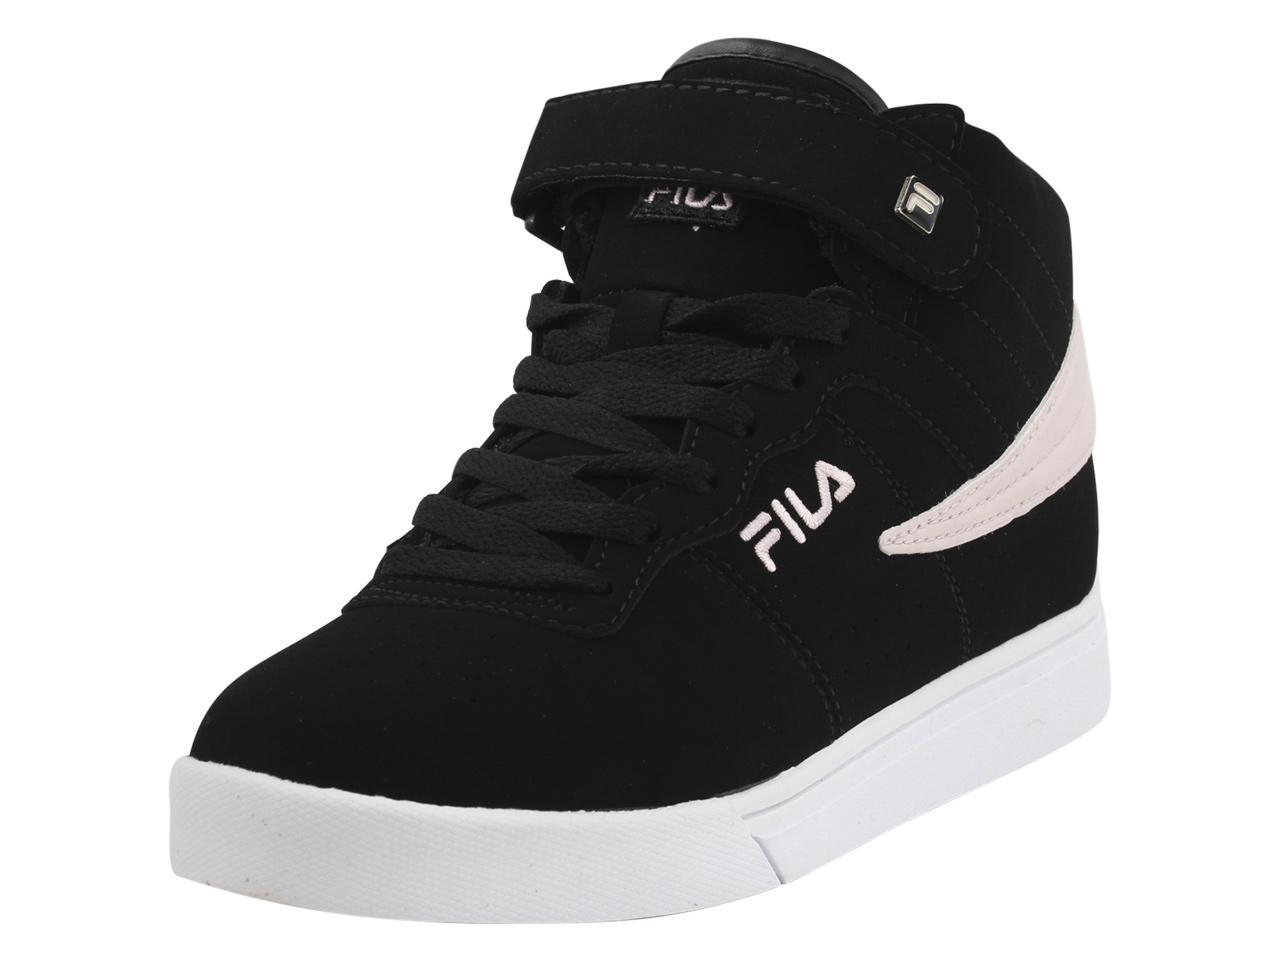 Fila Women's Vulc 13 MP Sneakers Shoes - Black/Chalk Pink/White - 8 B(M) US